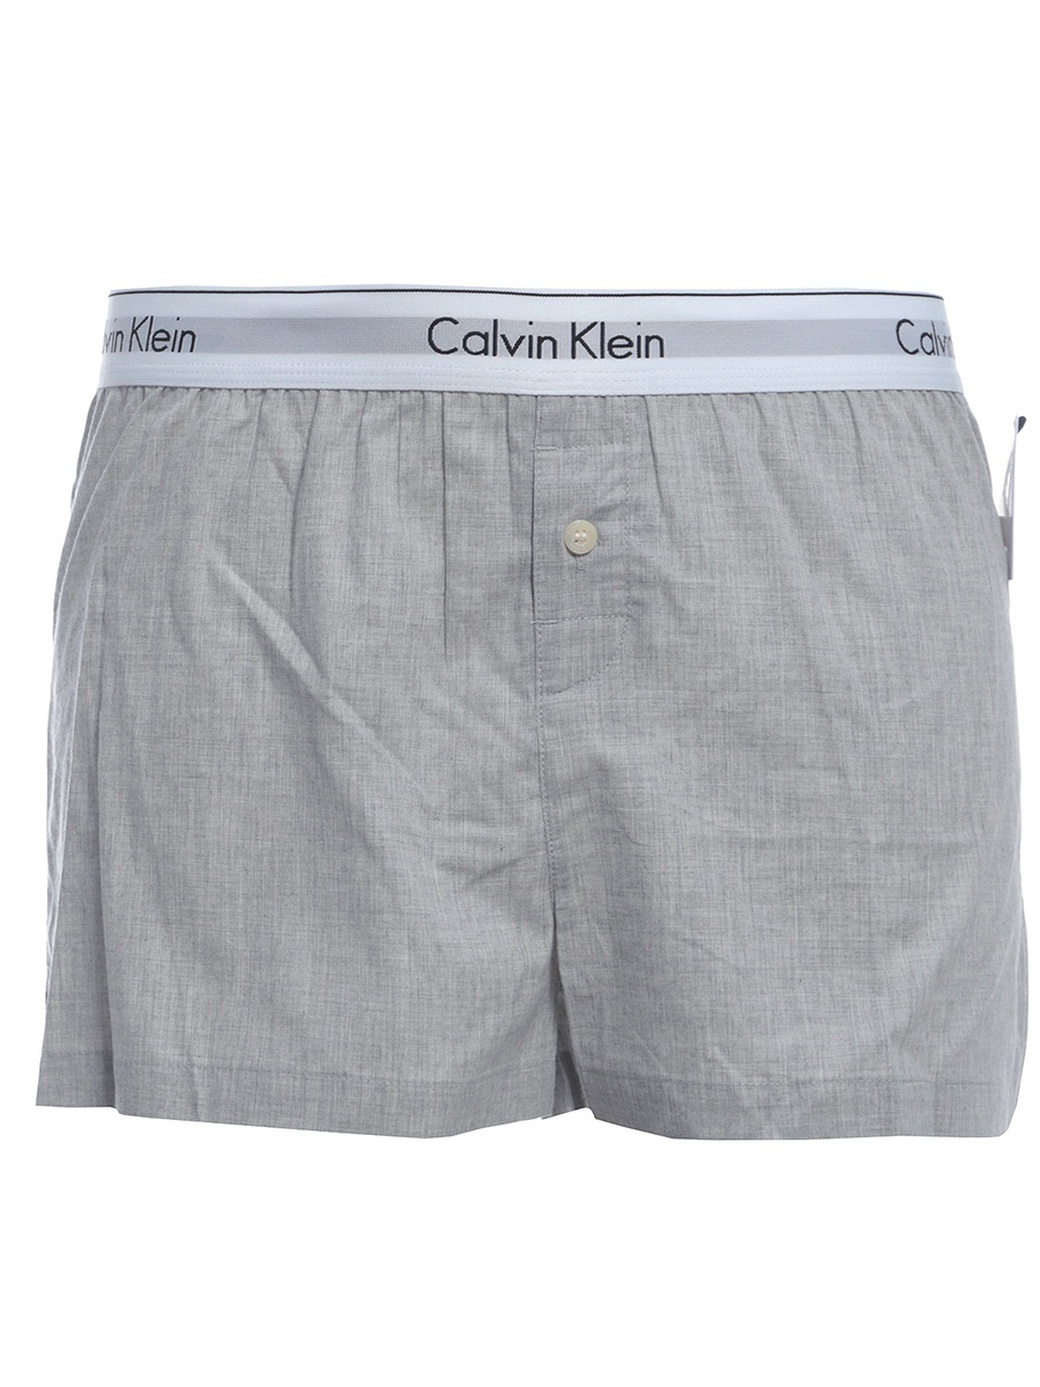 Шорты Calvin Klein 000QS6080E, серый фото